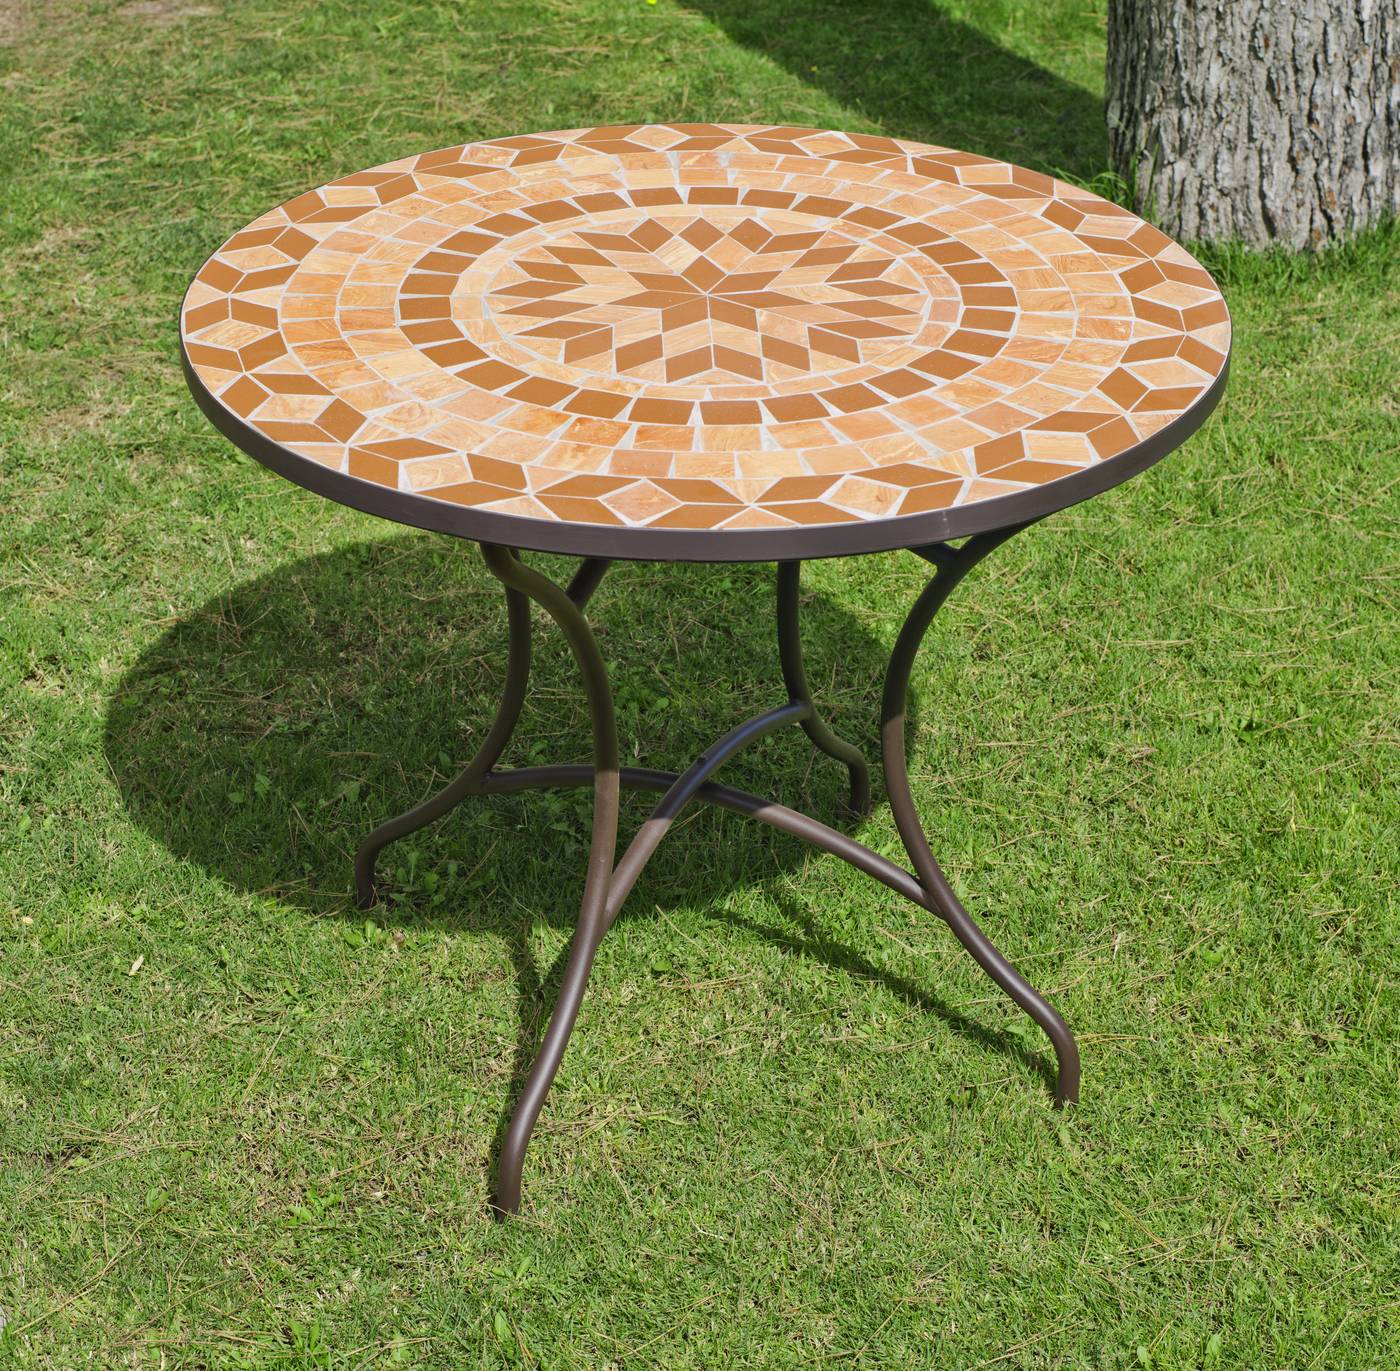 Conjunto Mosaico Priscila-Vigo 90-4 - Conjunto de acero forjado para jardín: 1 mesa con panel mosaico + 4 sillones de forja + 4 cojines